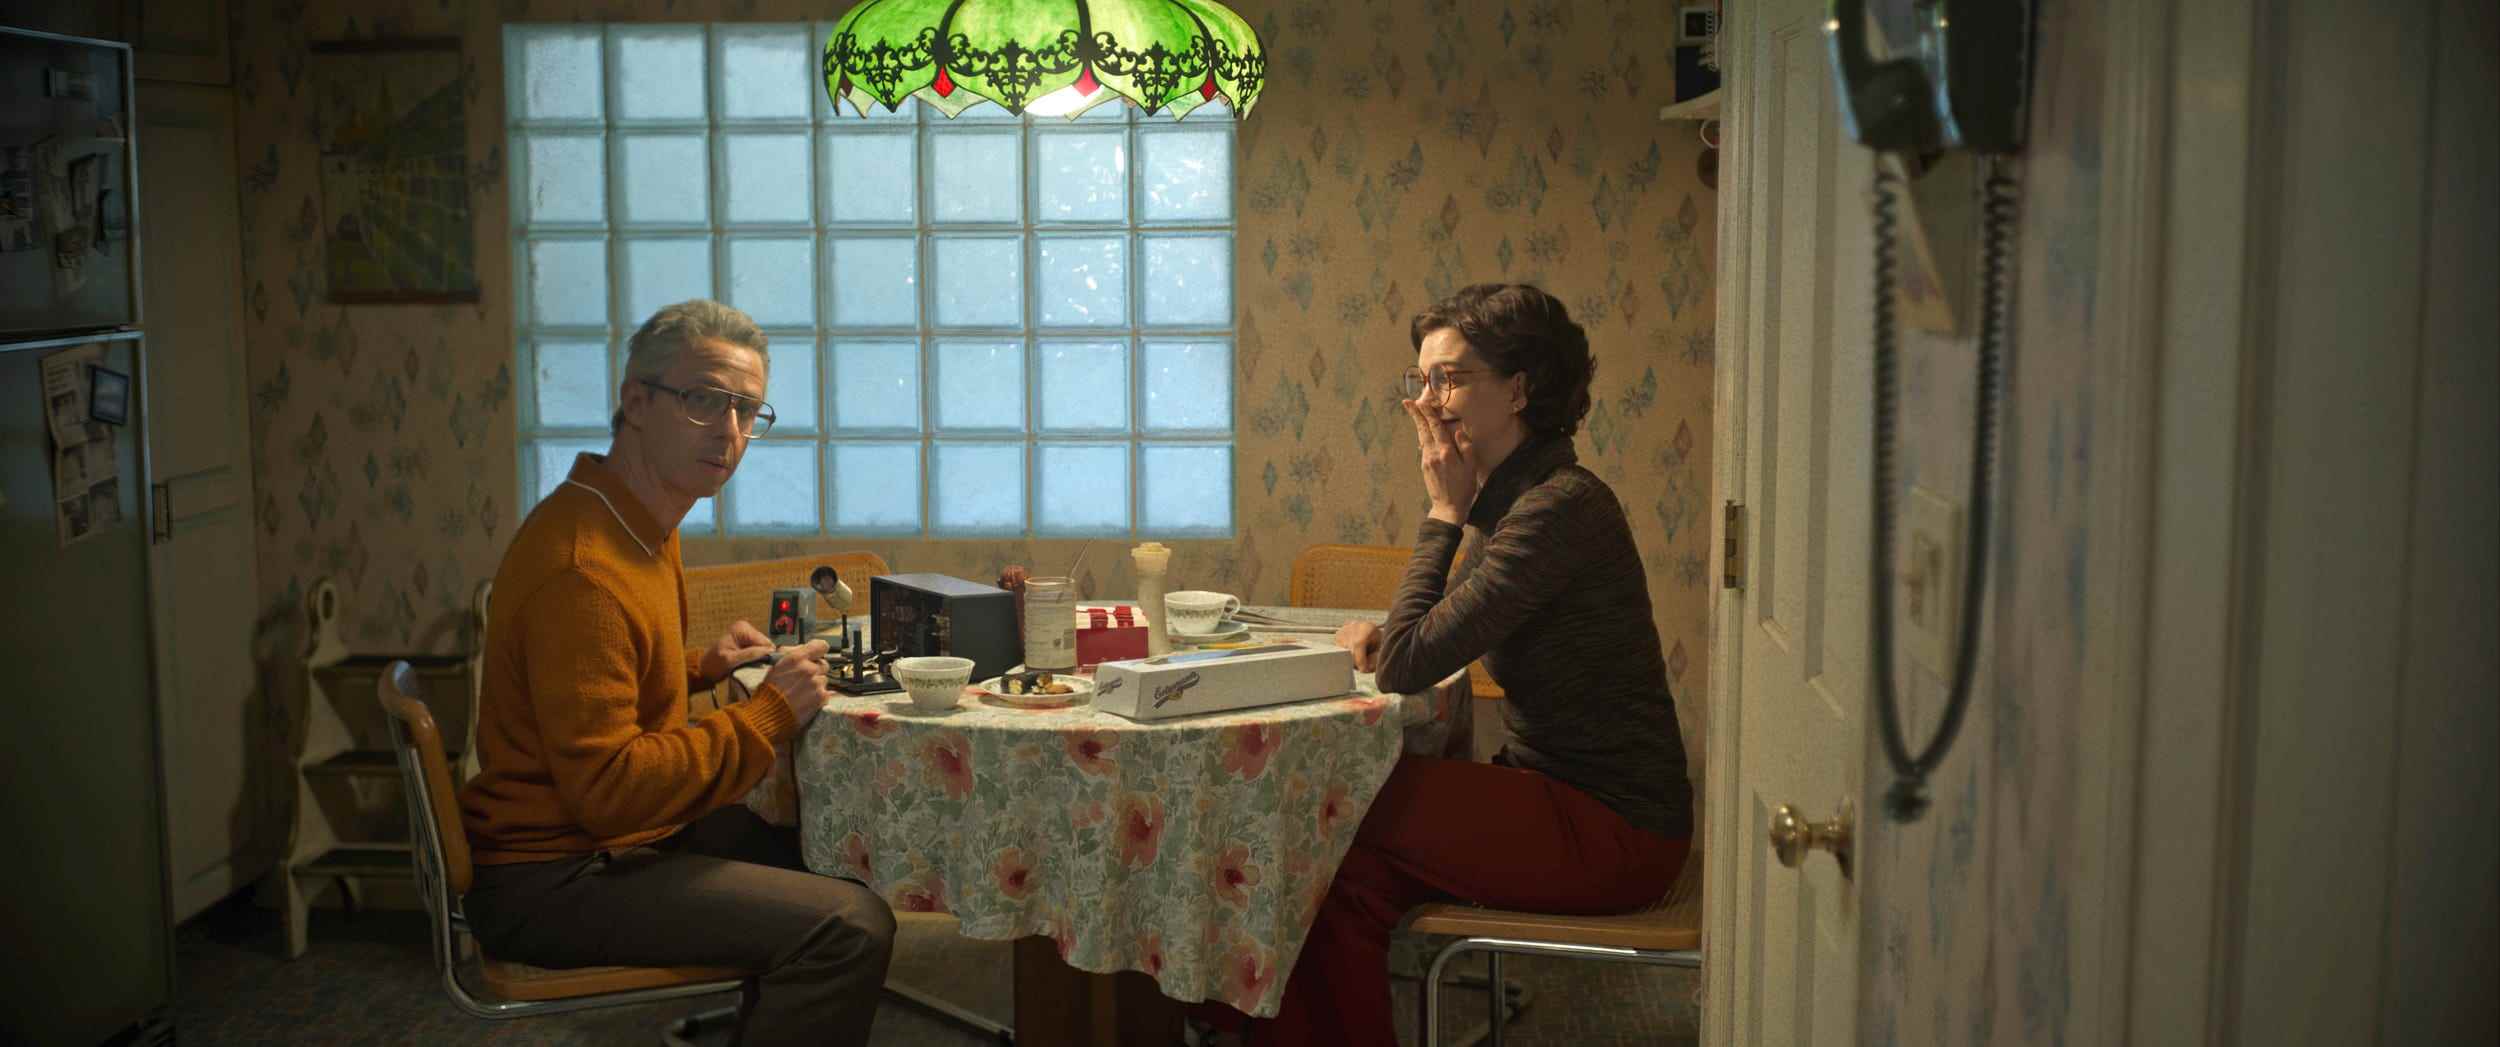 Jeremy Strong und Anny Hathaway sitzen an einem Küchentisch